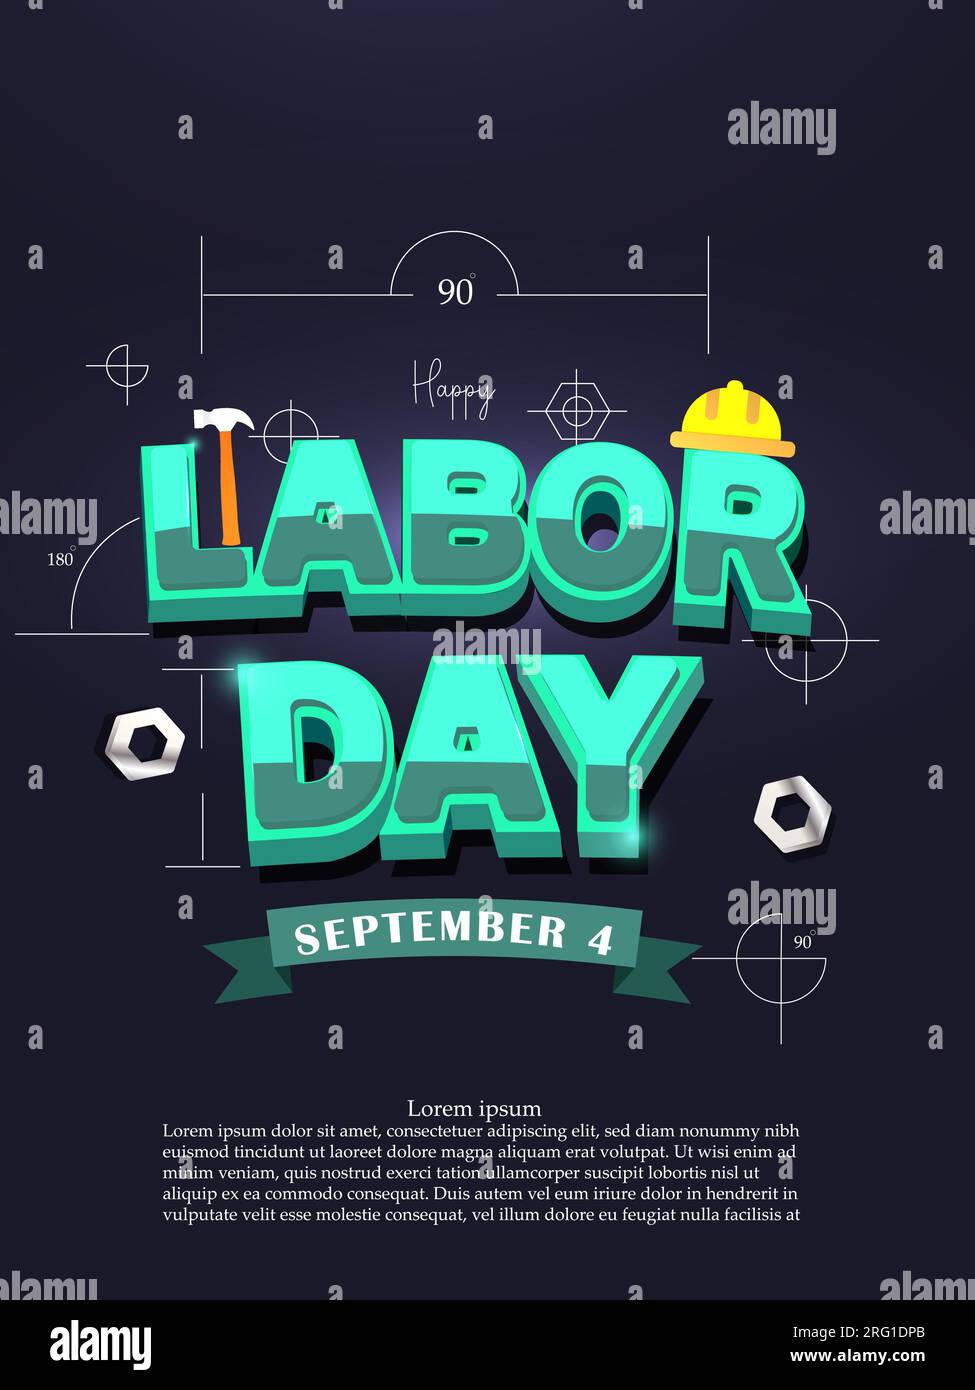 Happy Labor Day 4. September – Festungskonzept. 3D-Poster mit blauem Text zum Labor Day und Banner mit Vektordarstellung des Vorlagendesigns. Stock Vektor